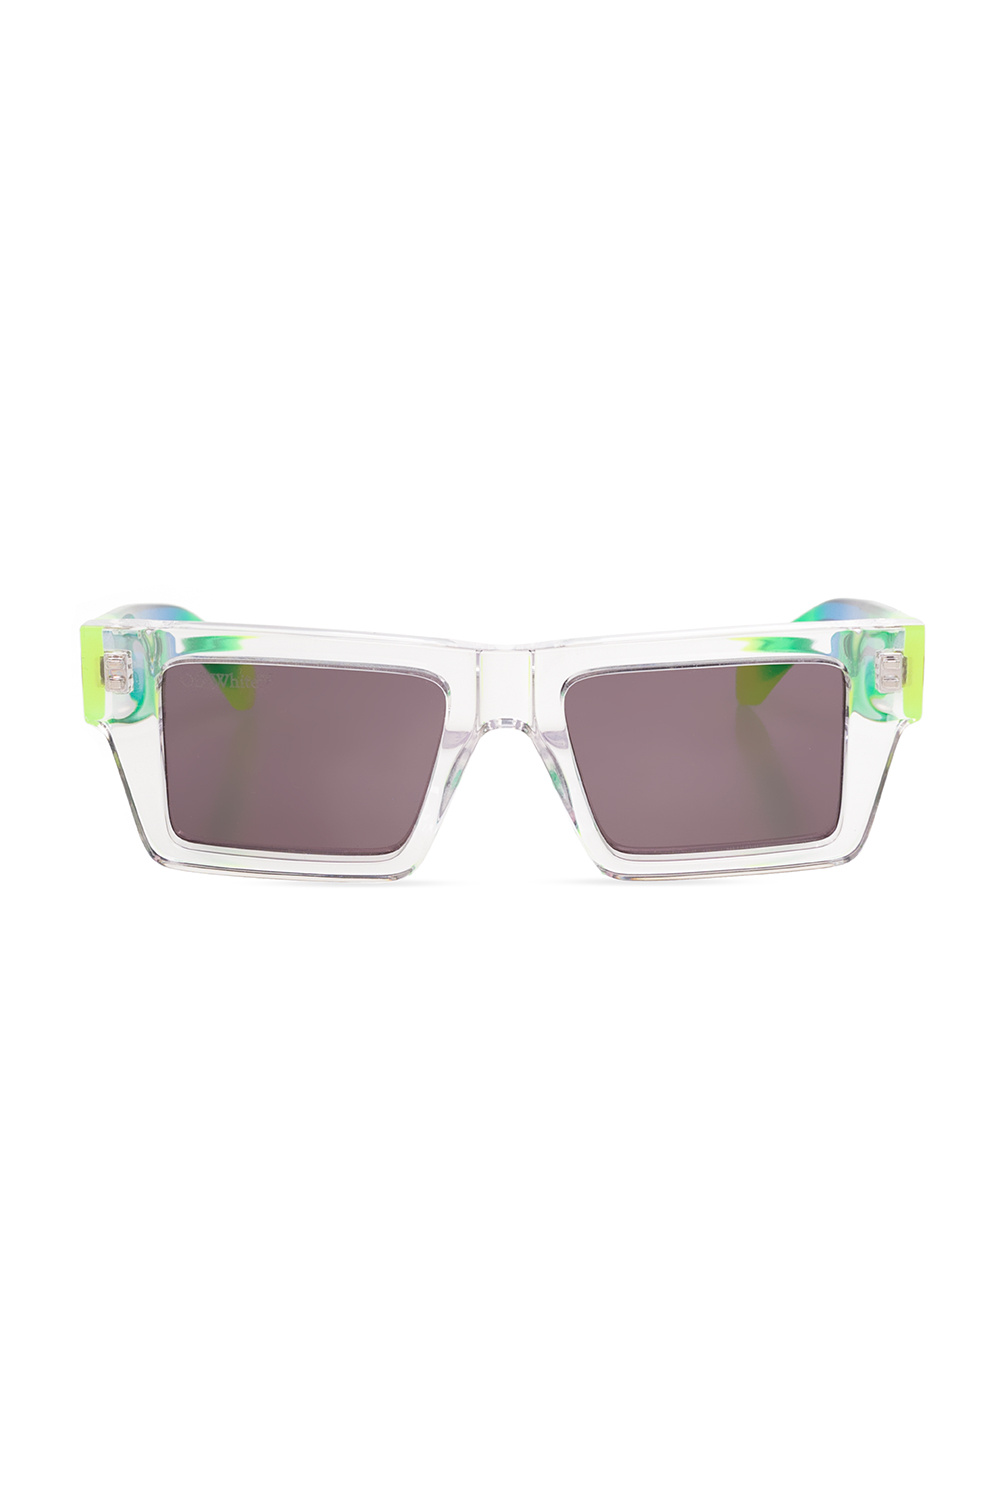 GenesinlifeShops Germany - 'Nassau' sunglasses Off - Parallel Chromapop Polarized  Sunglasses - White